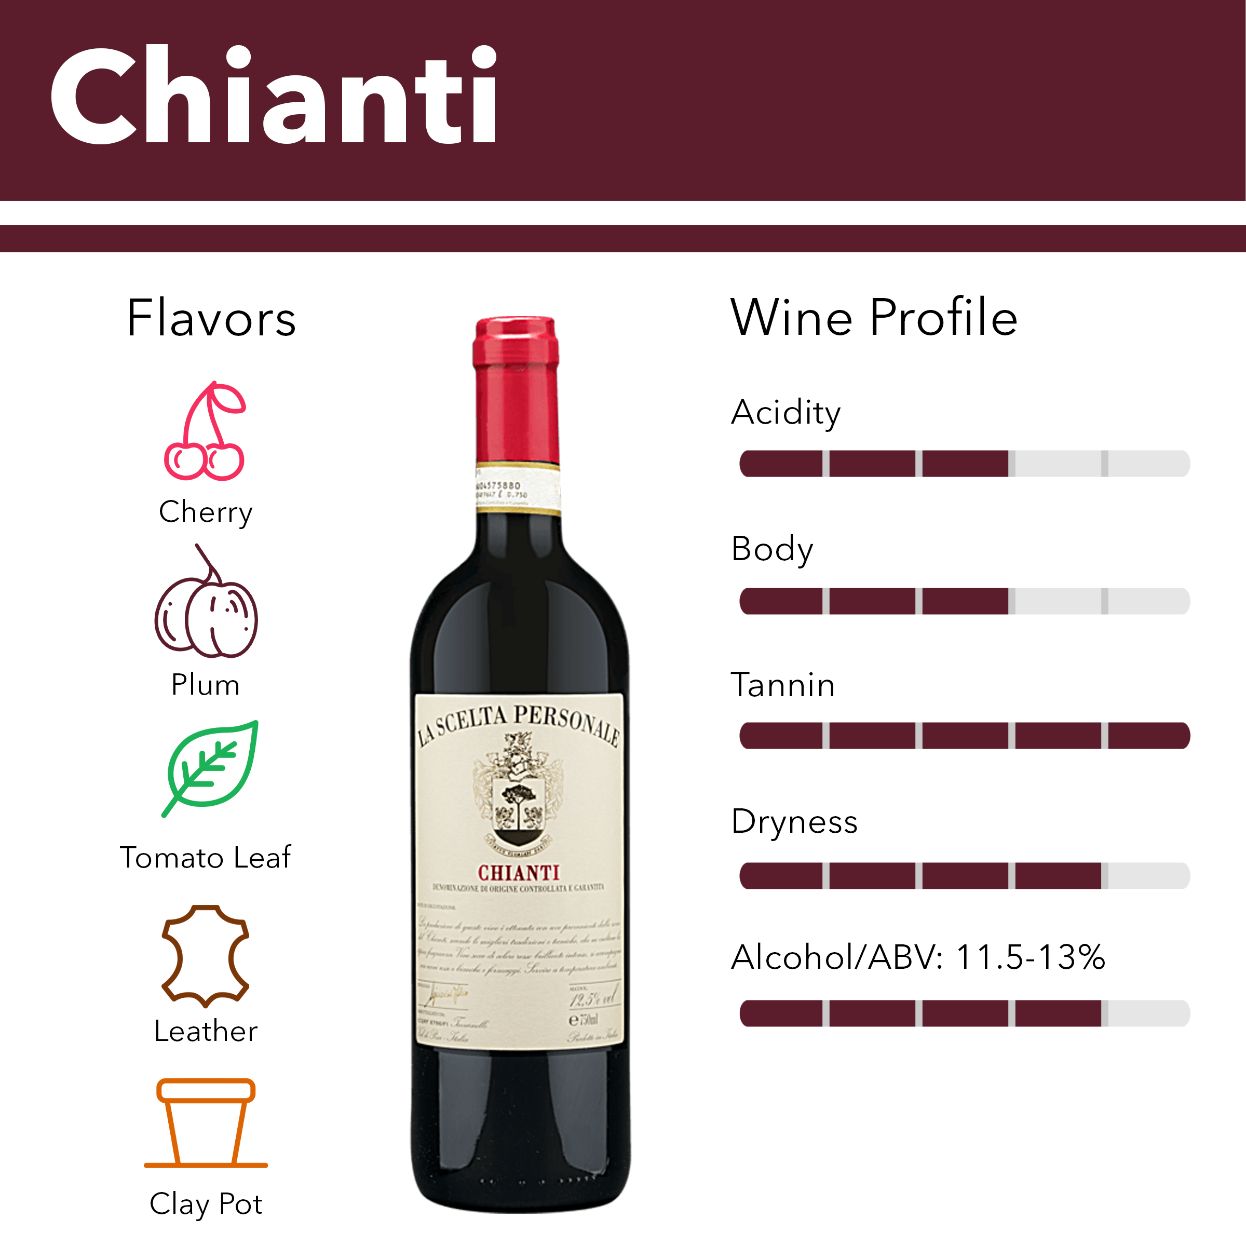 Chianti wine flavor profile